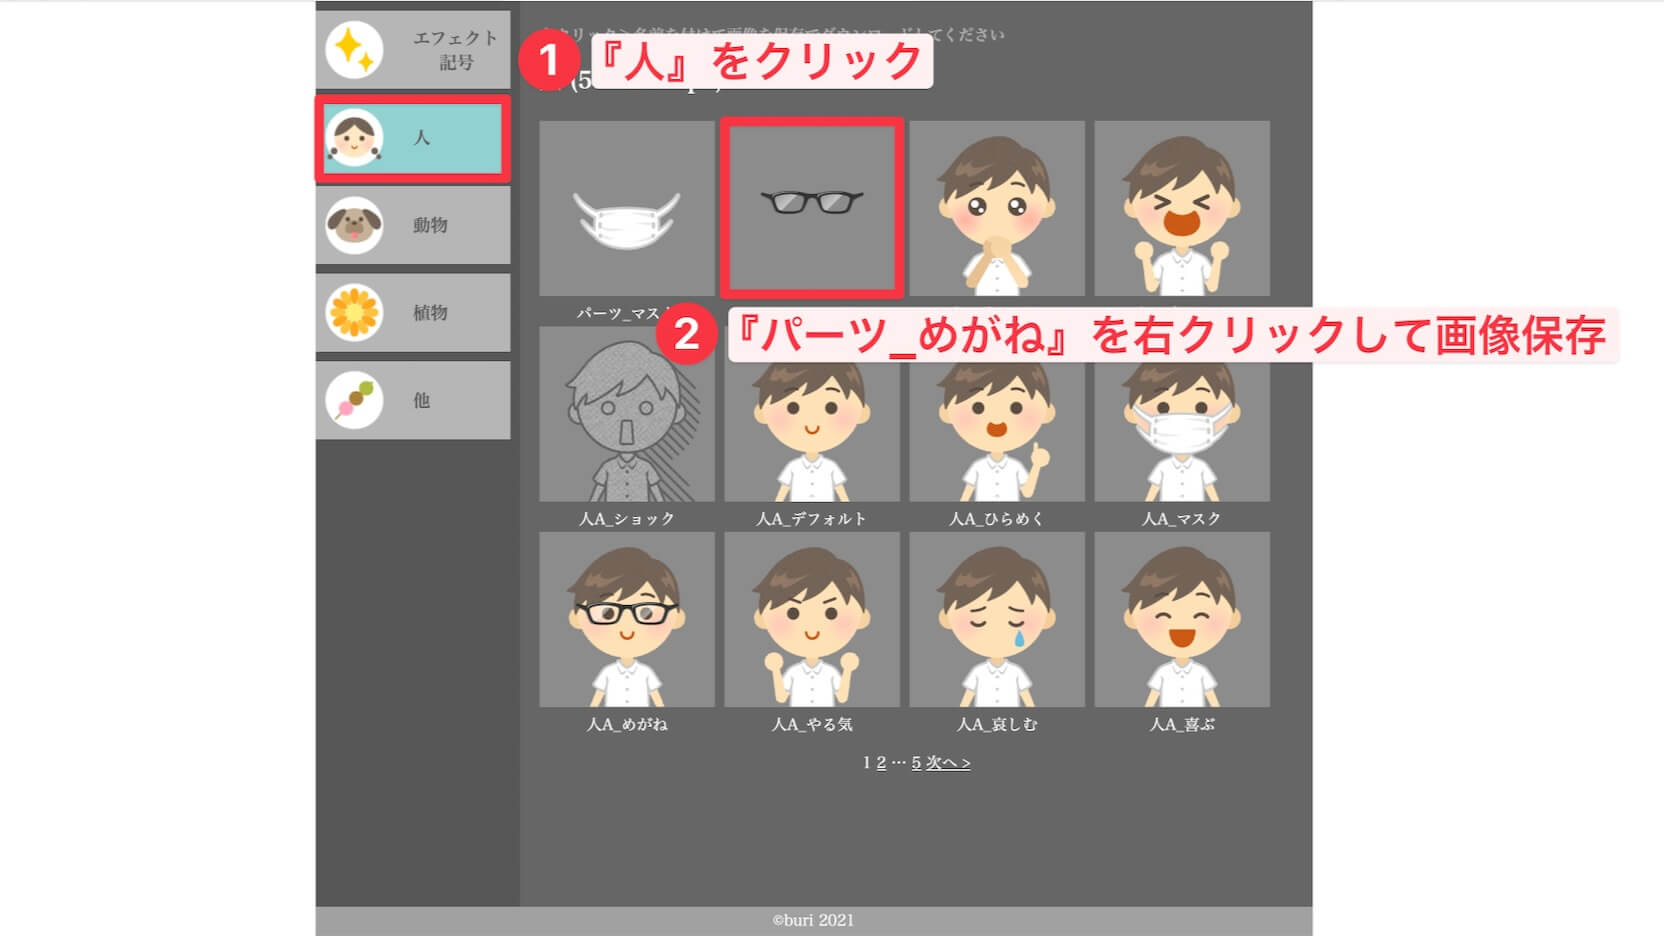 buriko's material museum illustration glasses download procedure